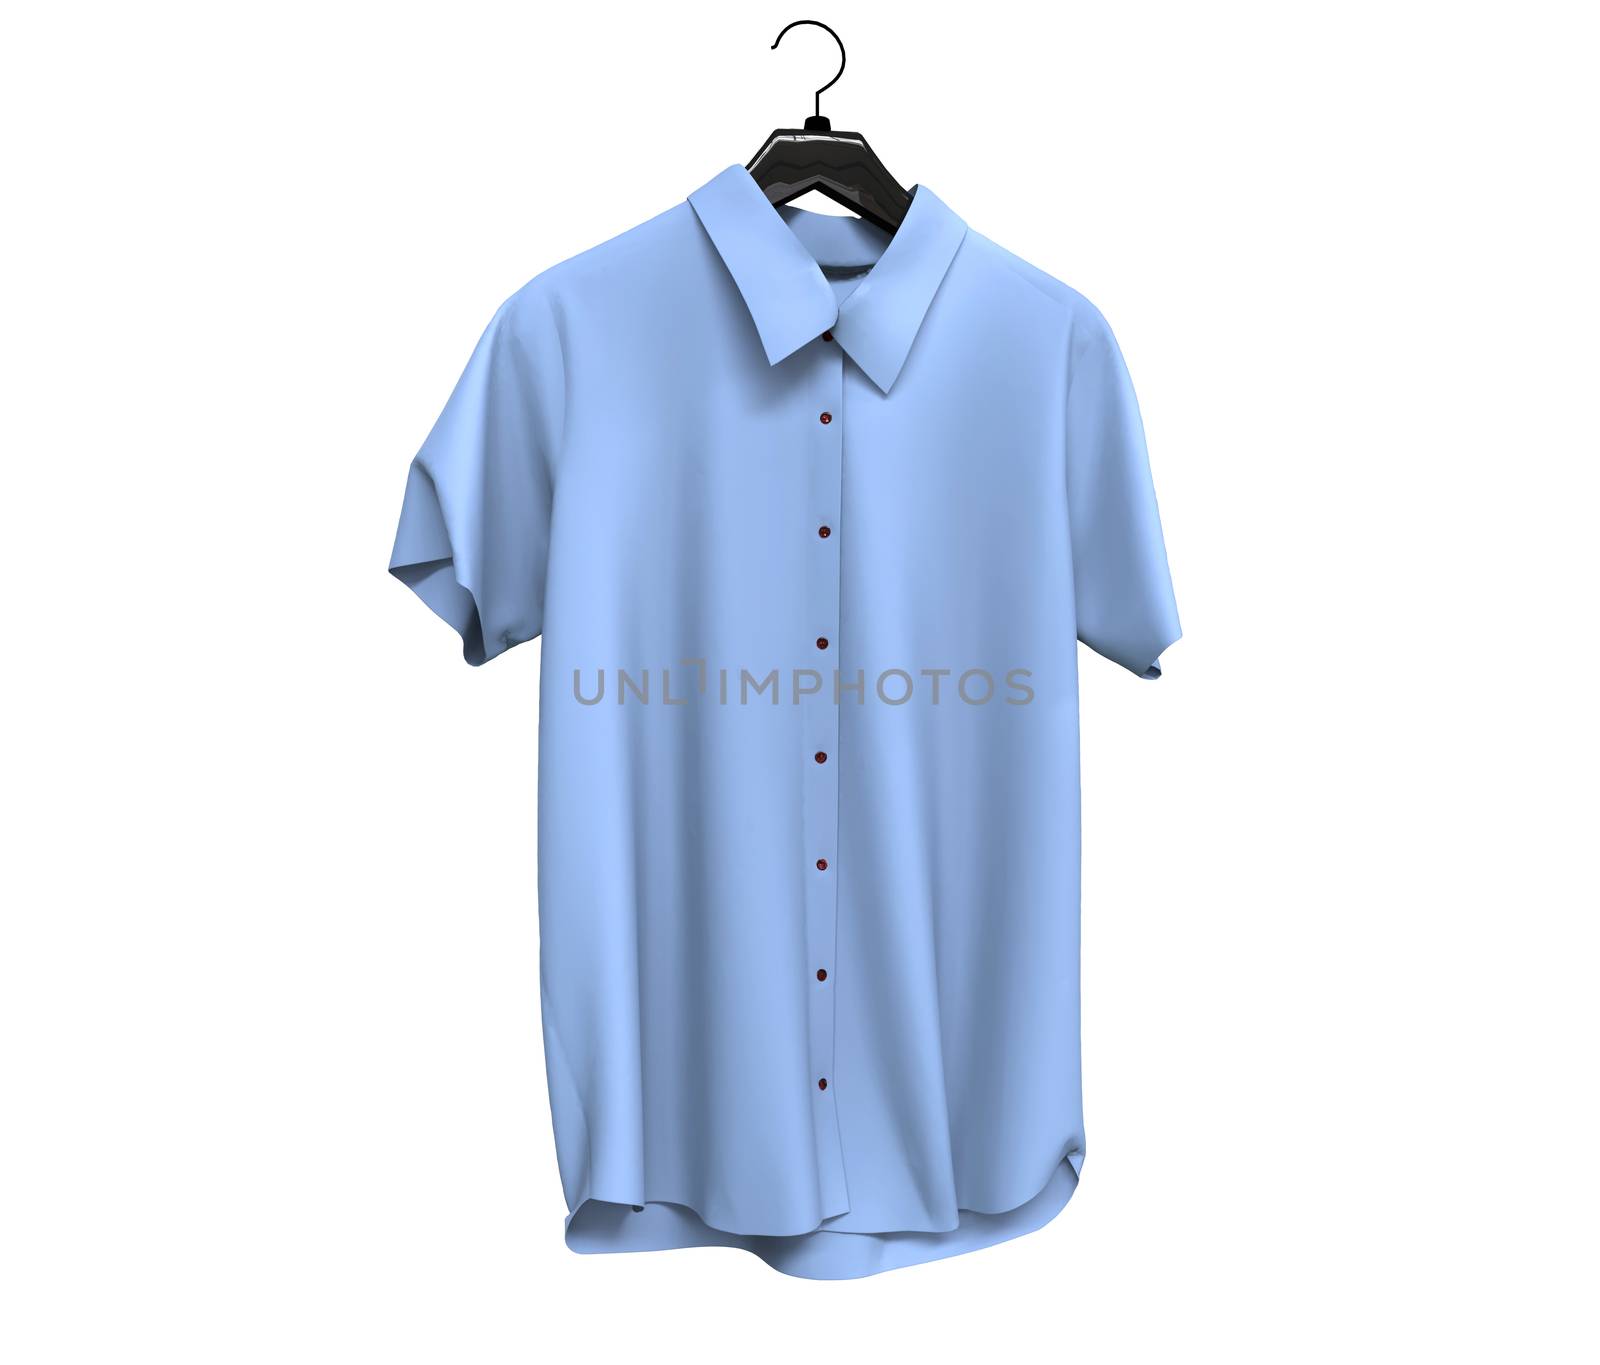 Pale blue short sleeve shirts isolated on white background.